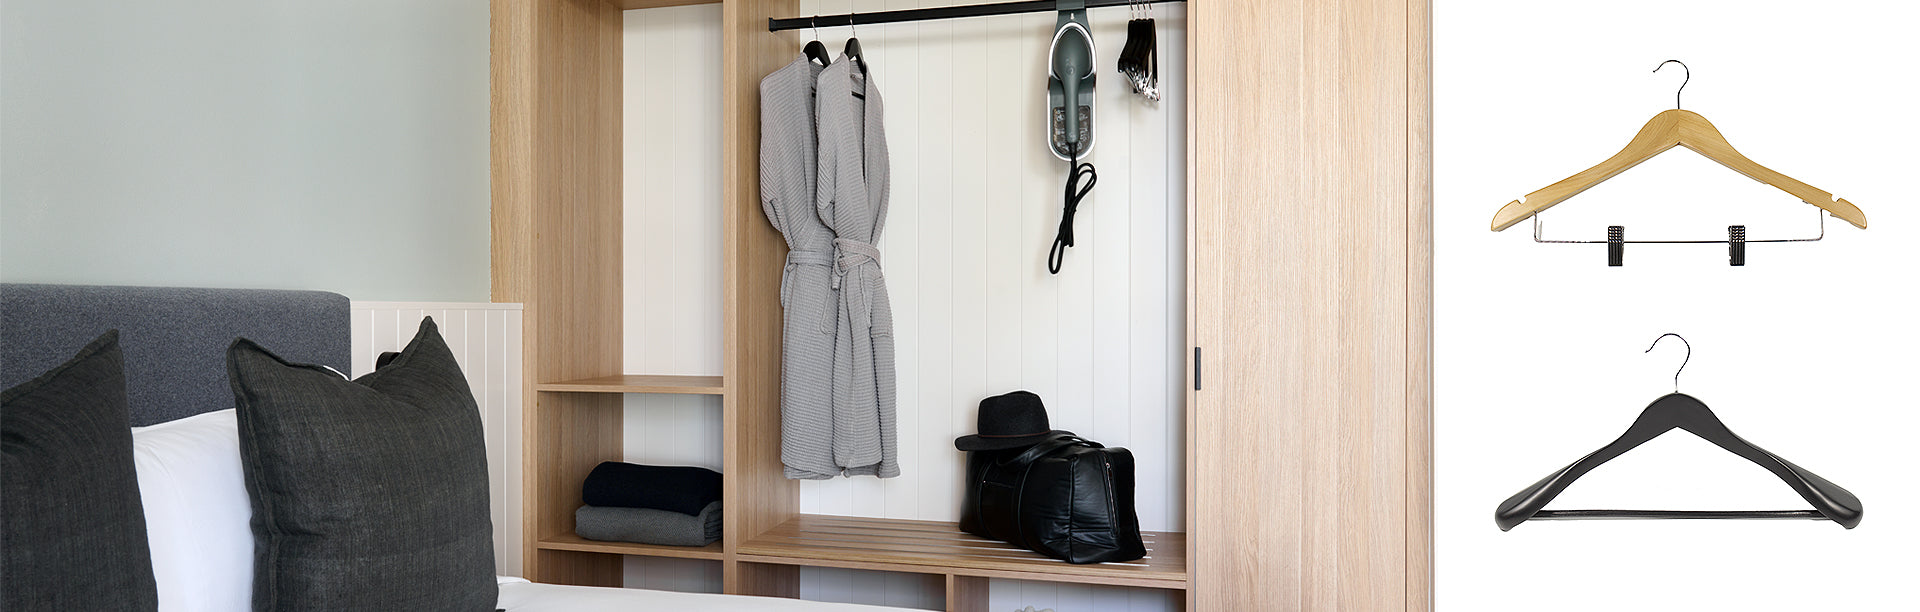 Swisstrade Hotel Wardrobe Coat Hangers Collection